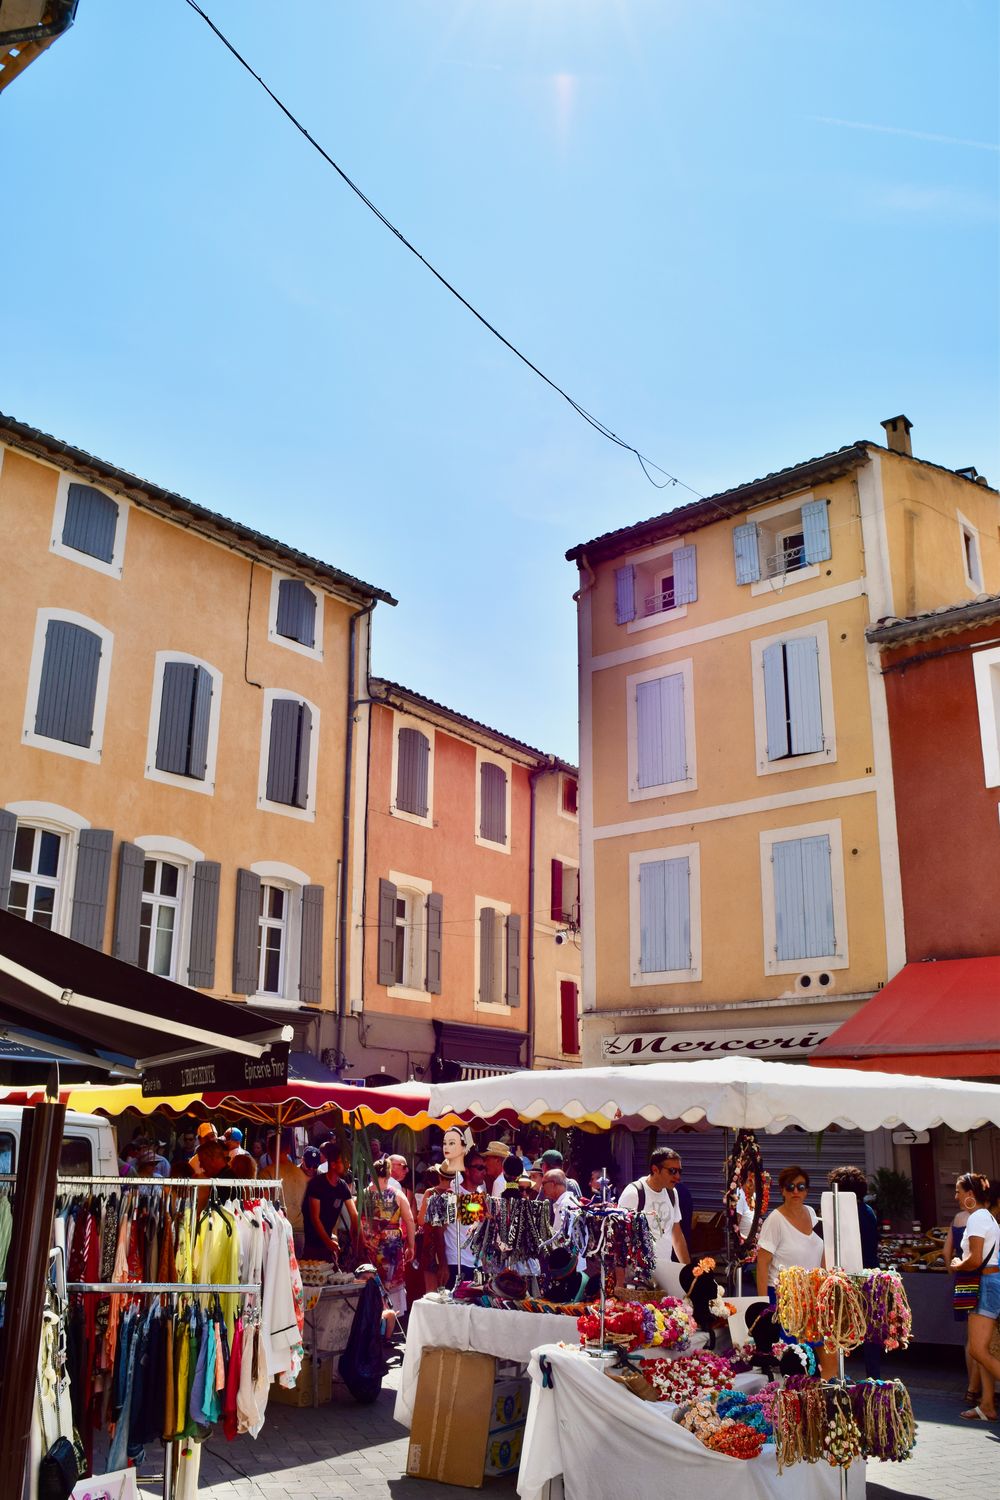 L’Isle-sur-la-Sorgue Antique Market - Best Small Towns in Provence to Visit